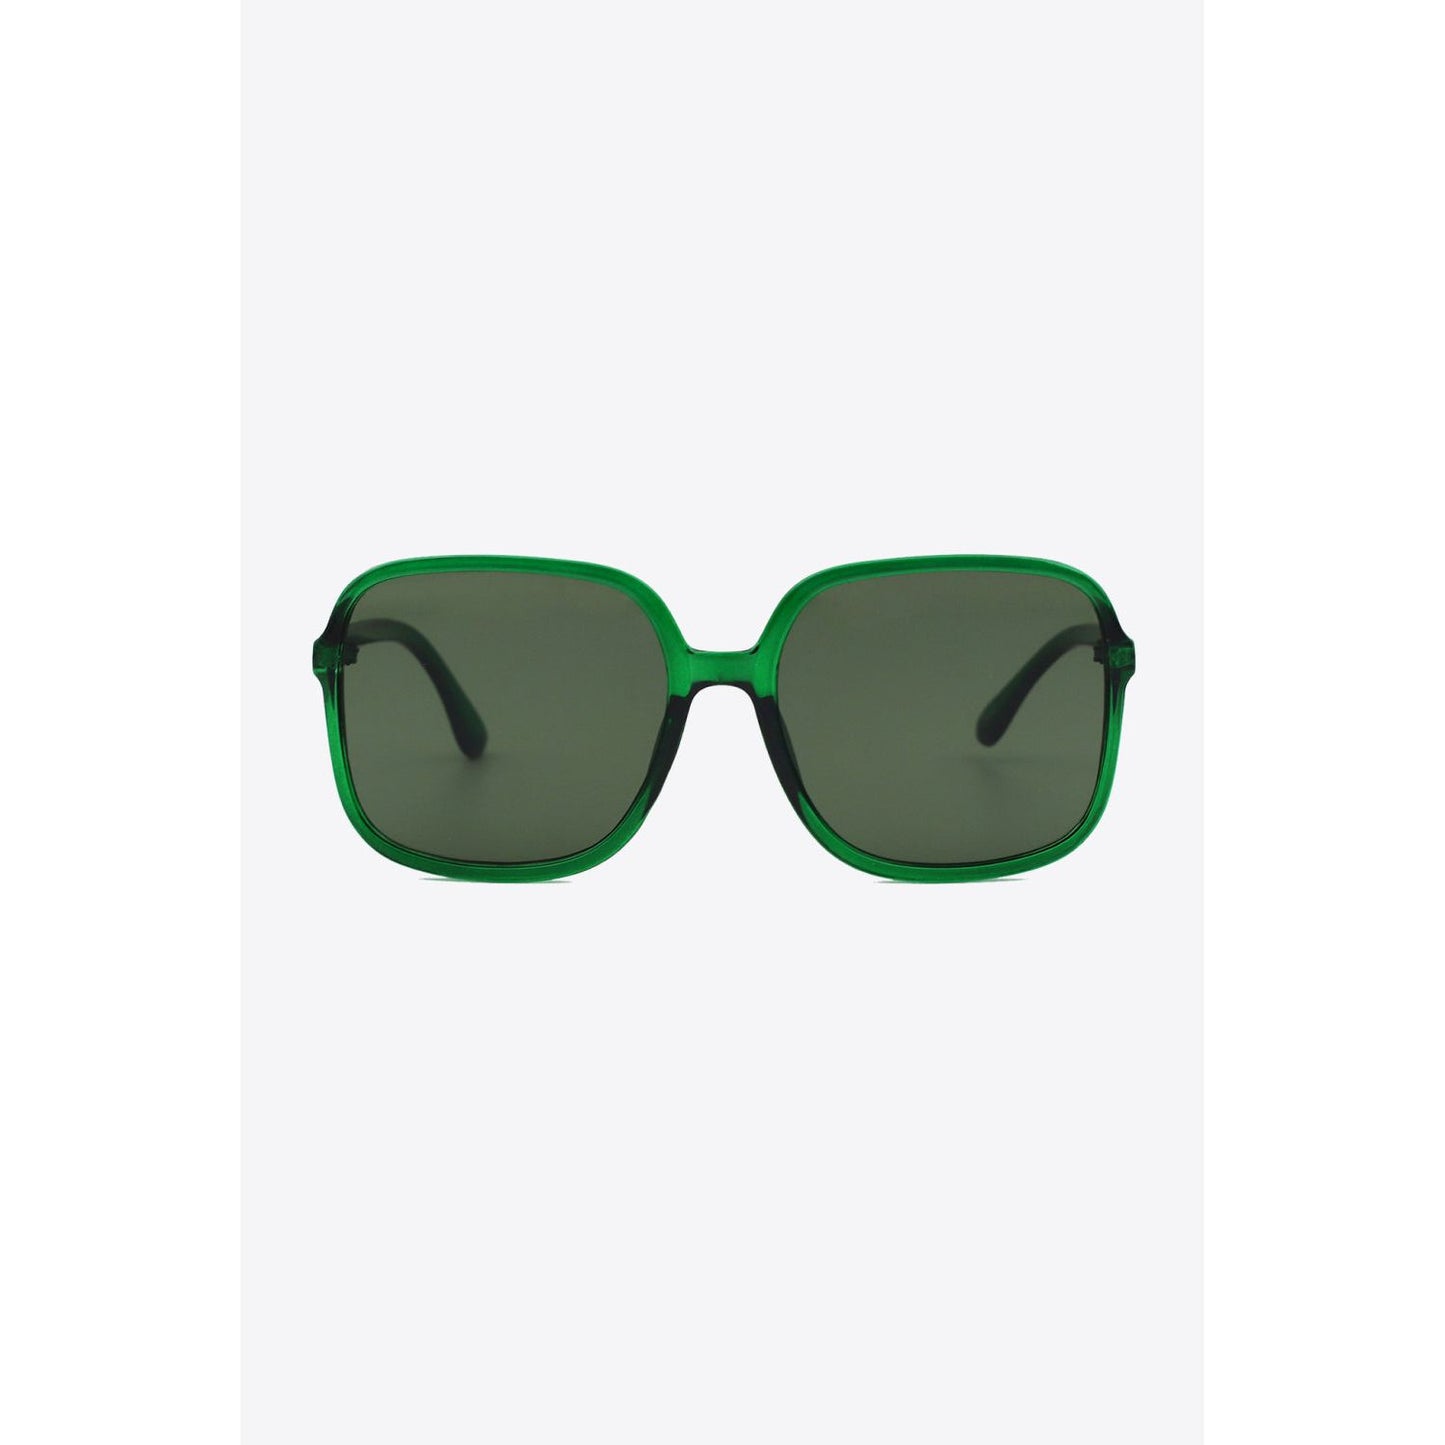 Polycarbonate Square Sunglasses - TiffanyzKlozet